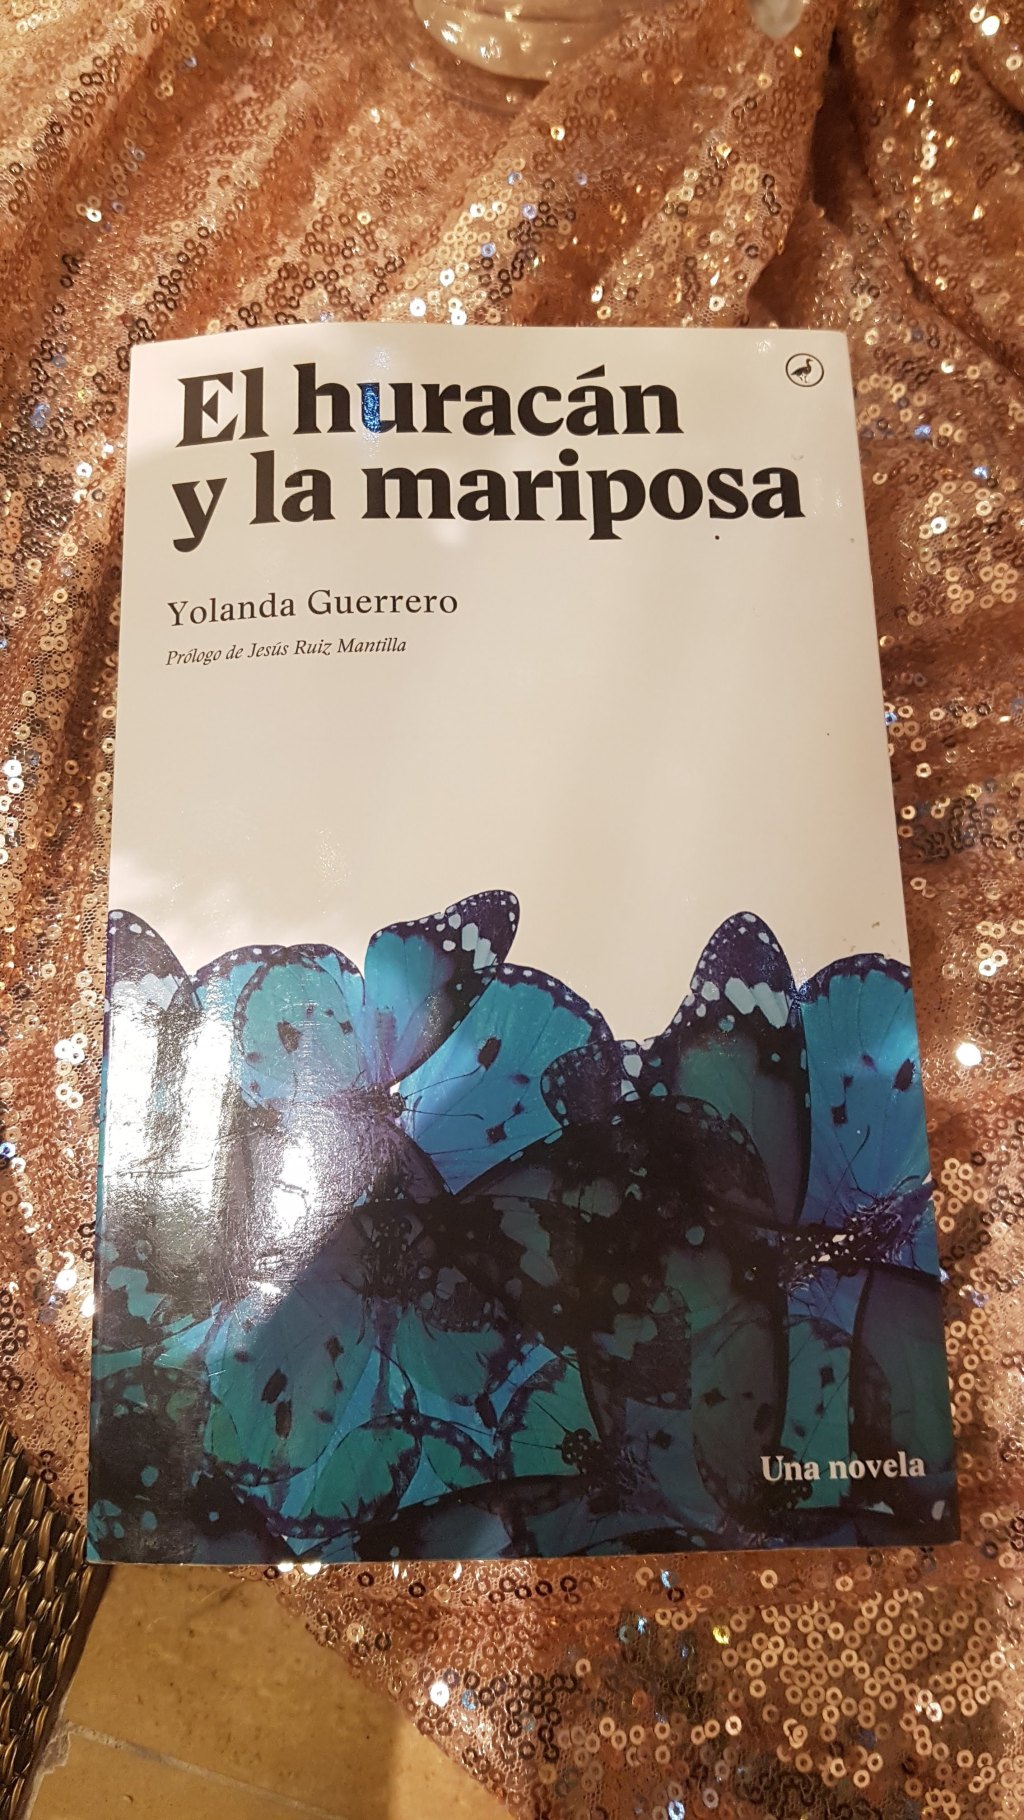 Dedicado a la novela «El huracán y la mariposa»(de la escritora y periodista Yolanda Guerrero).